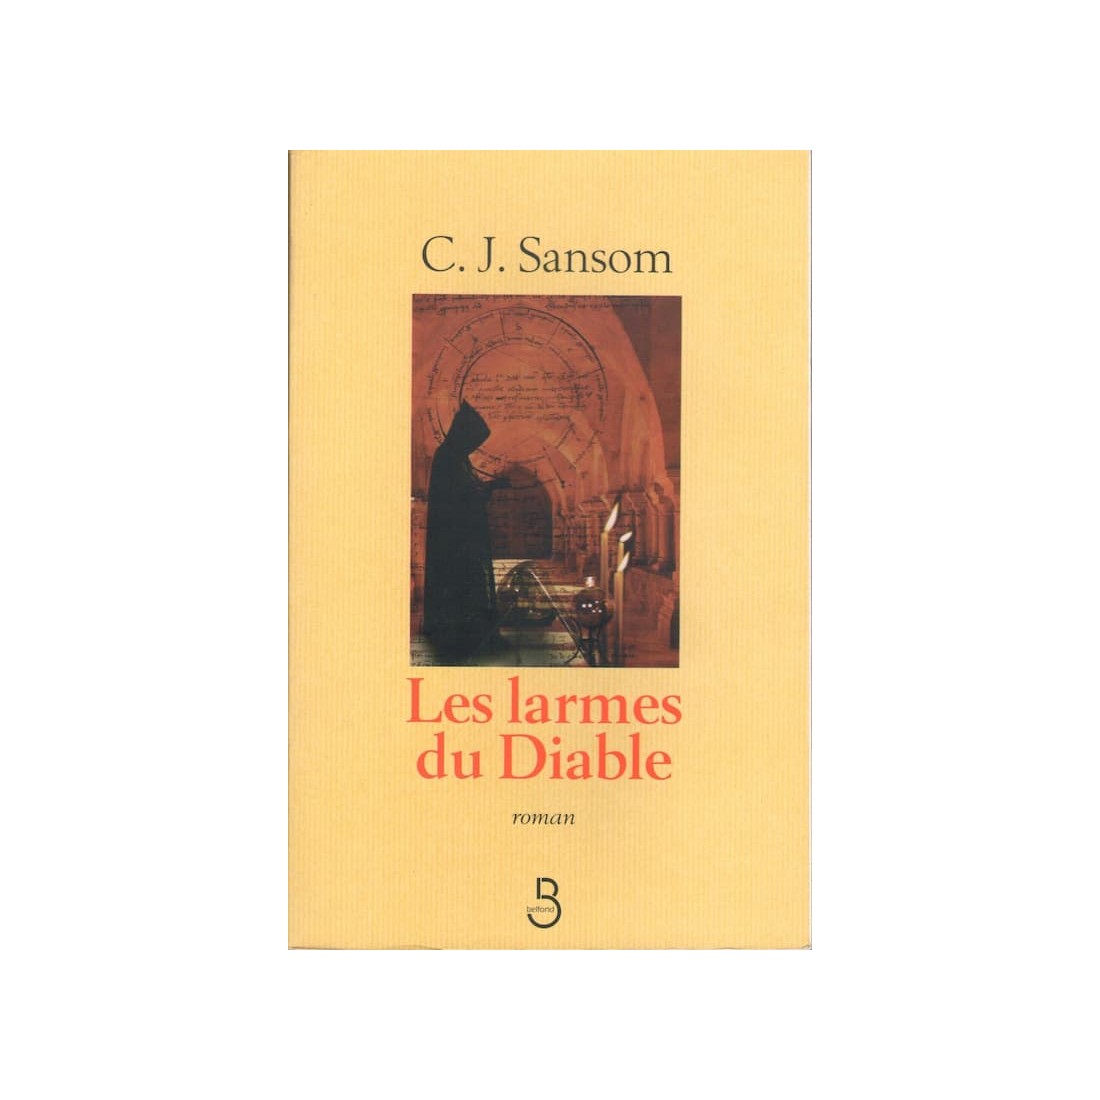 Les larmes du diable - Roman de C.J. Sansom - Ocazlivres.com